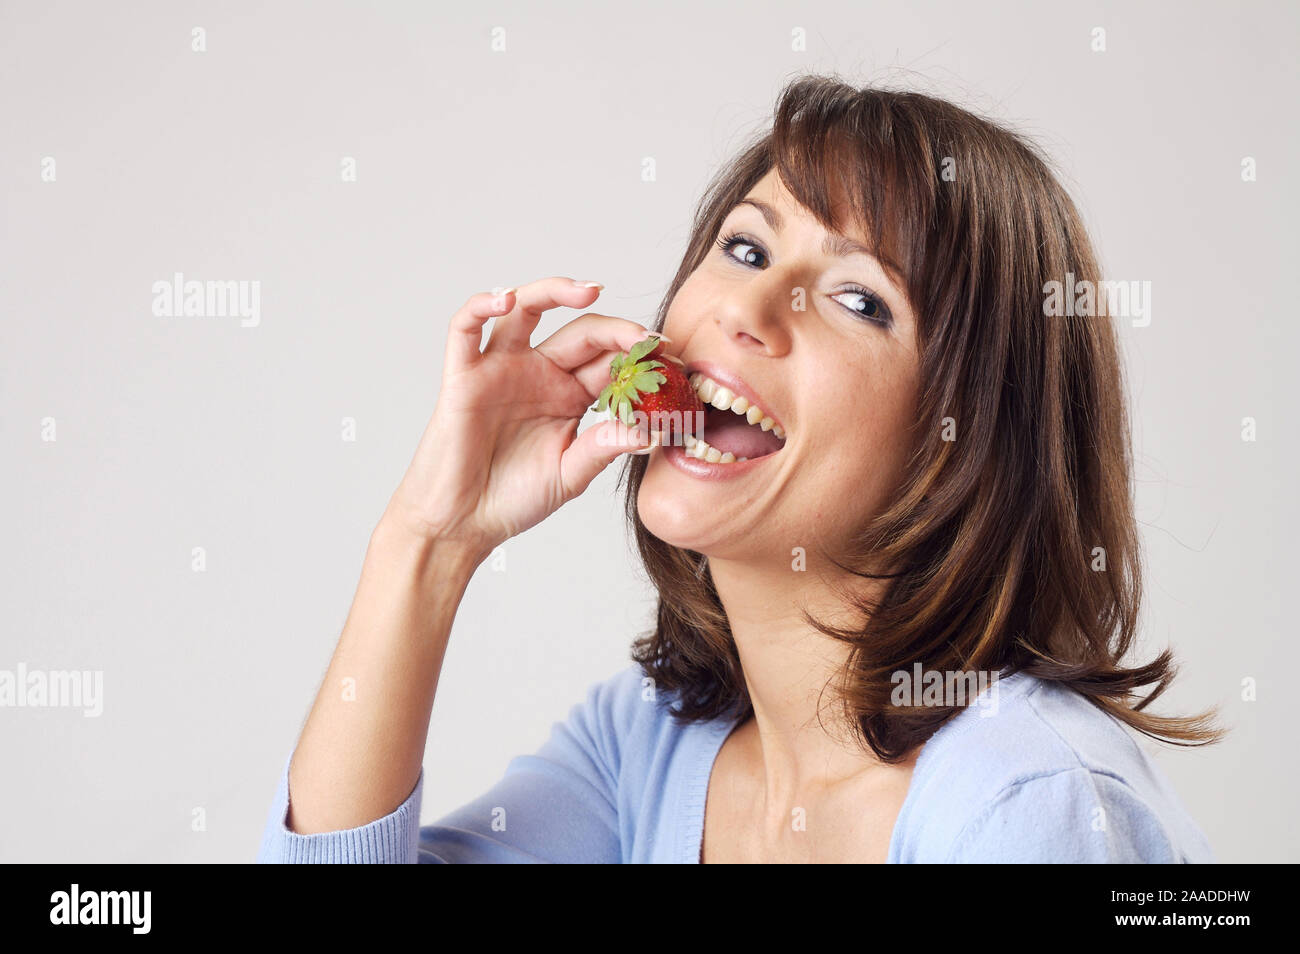 Eine junge Frau ist eine Erdbeere |  a young woman eati a strawberry, portrait Stock Photo